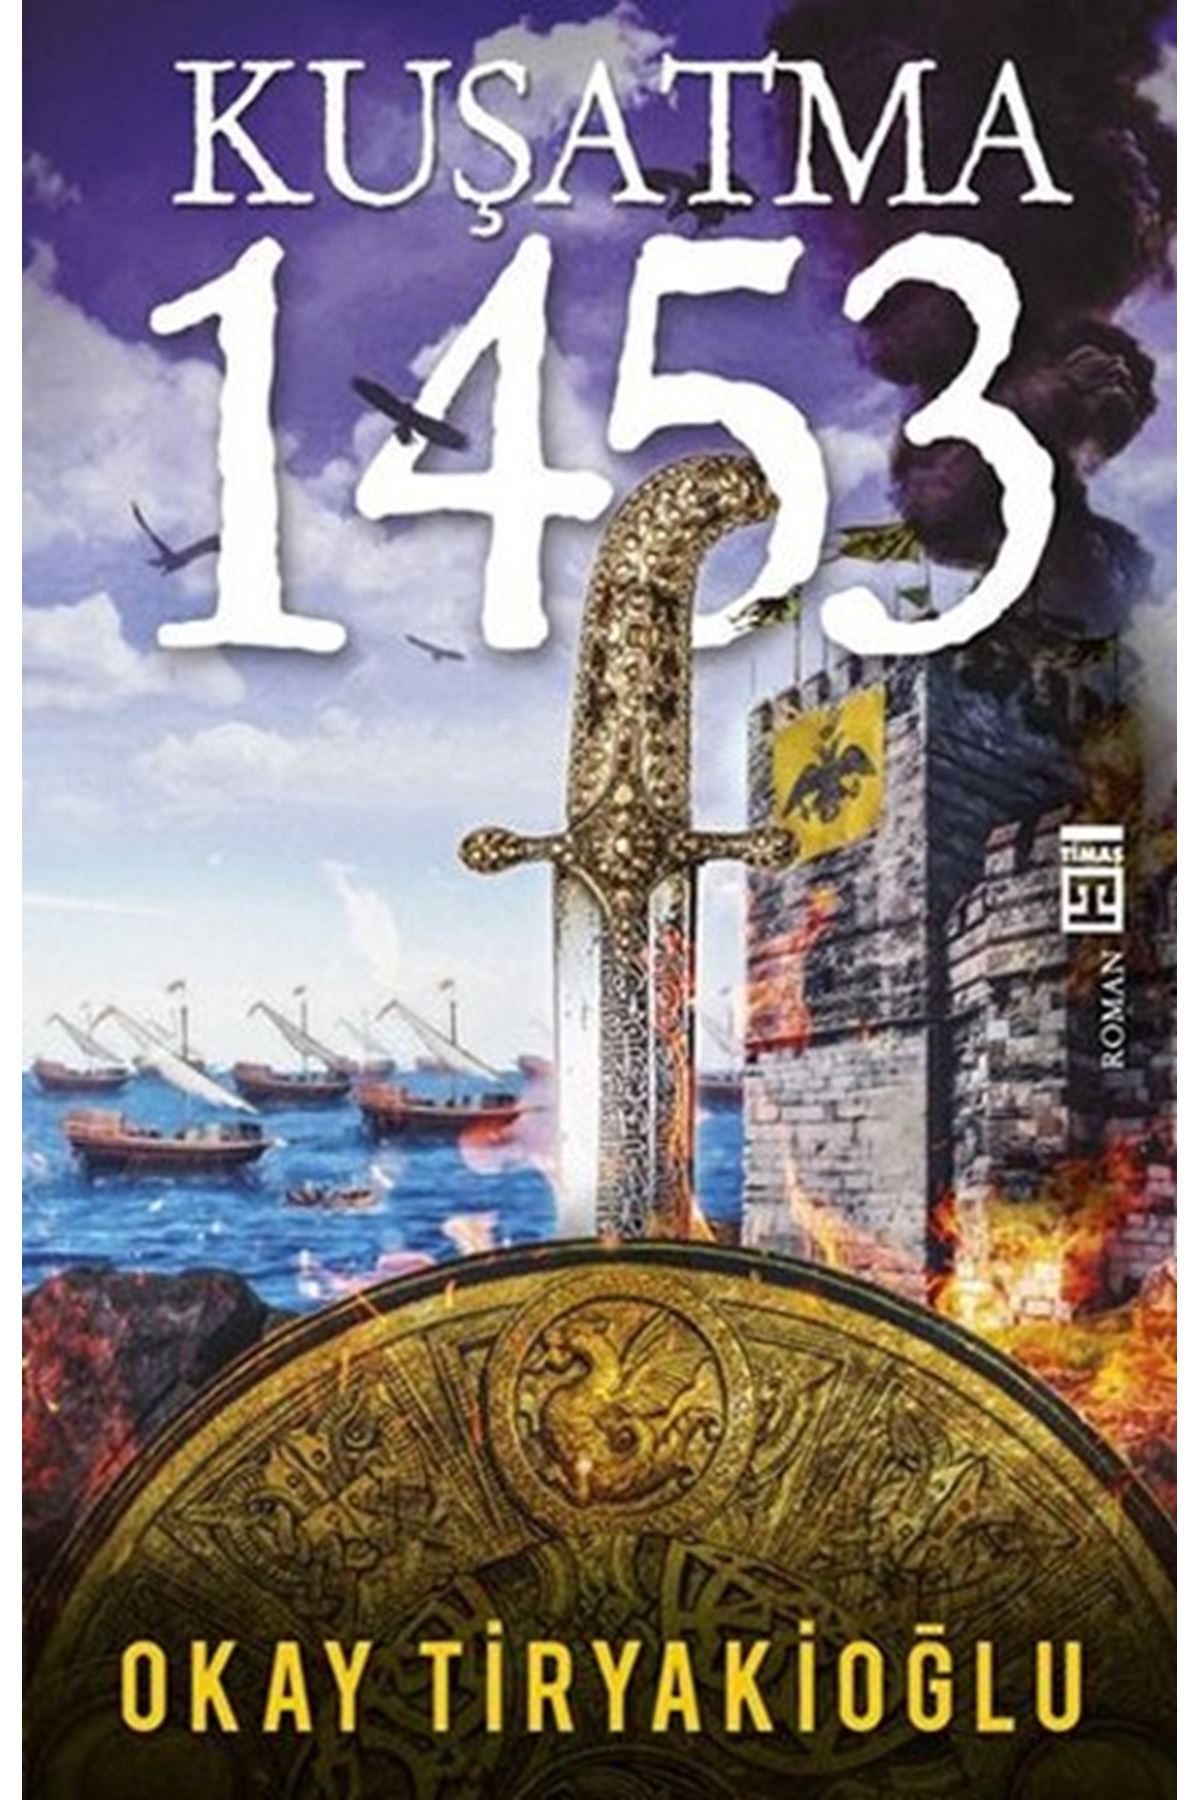 Okay Tiryakioğlu - Kuşatma 1453